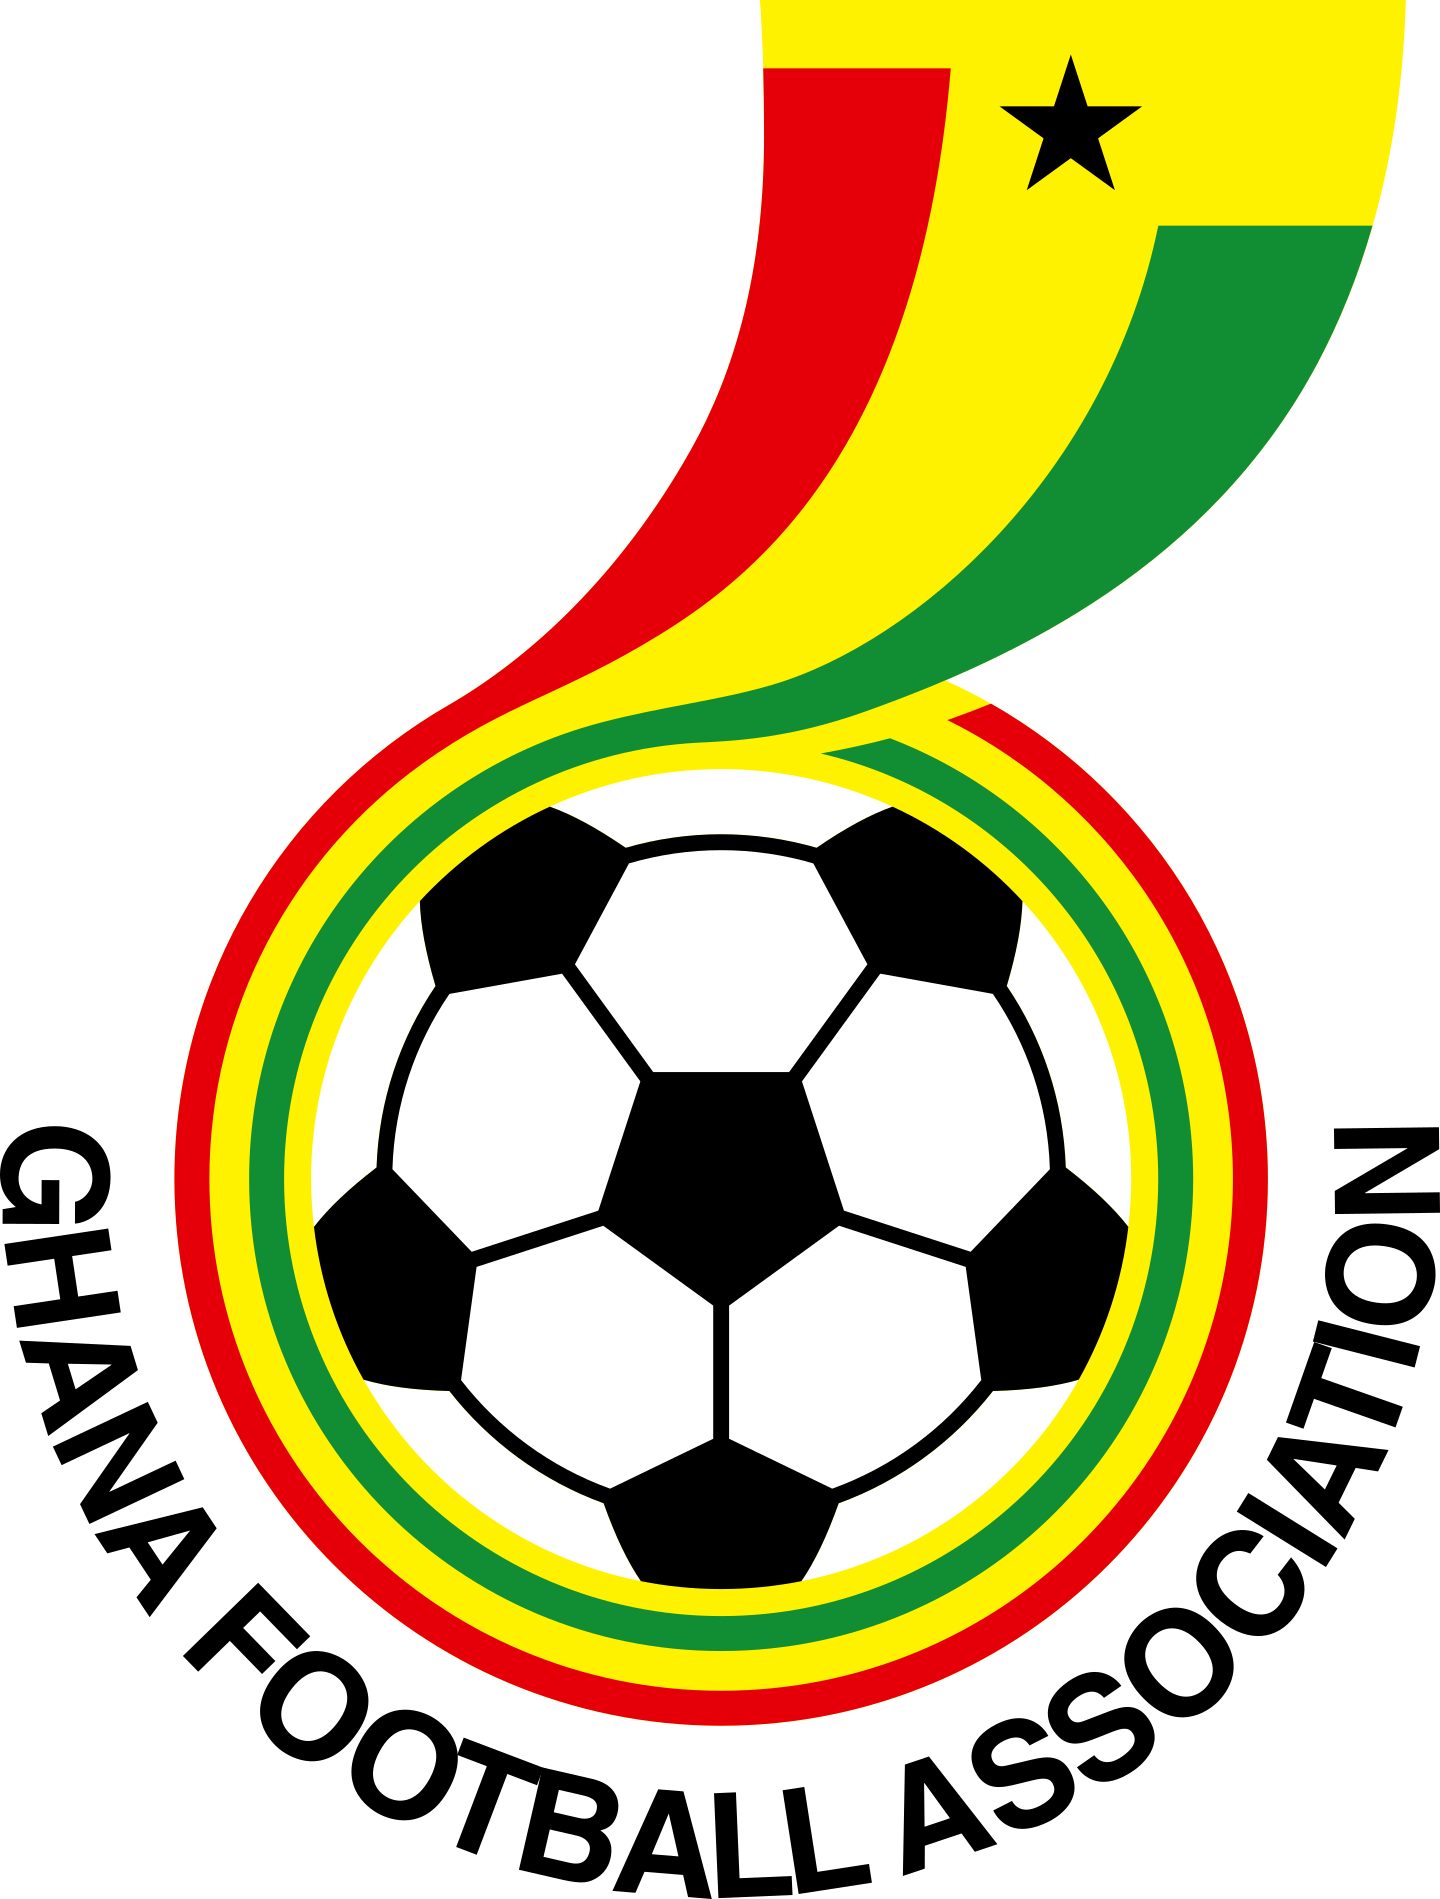 ghana national football team logo 2 - Ghana National Football Team Logo